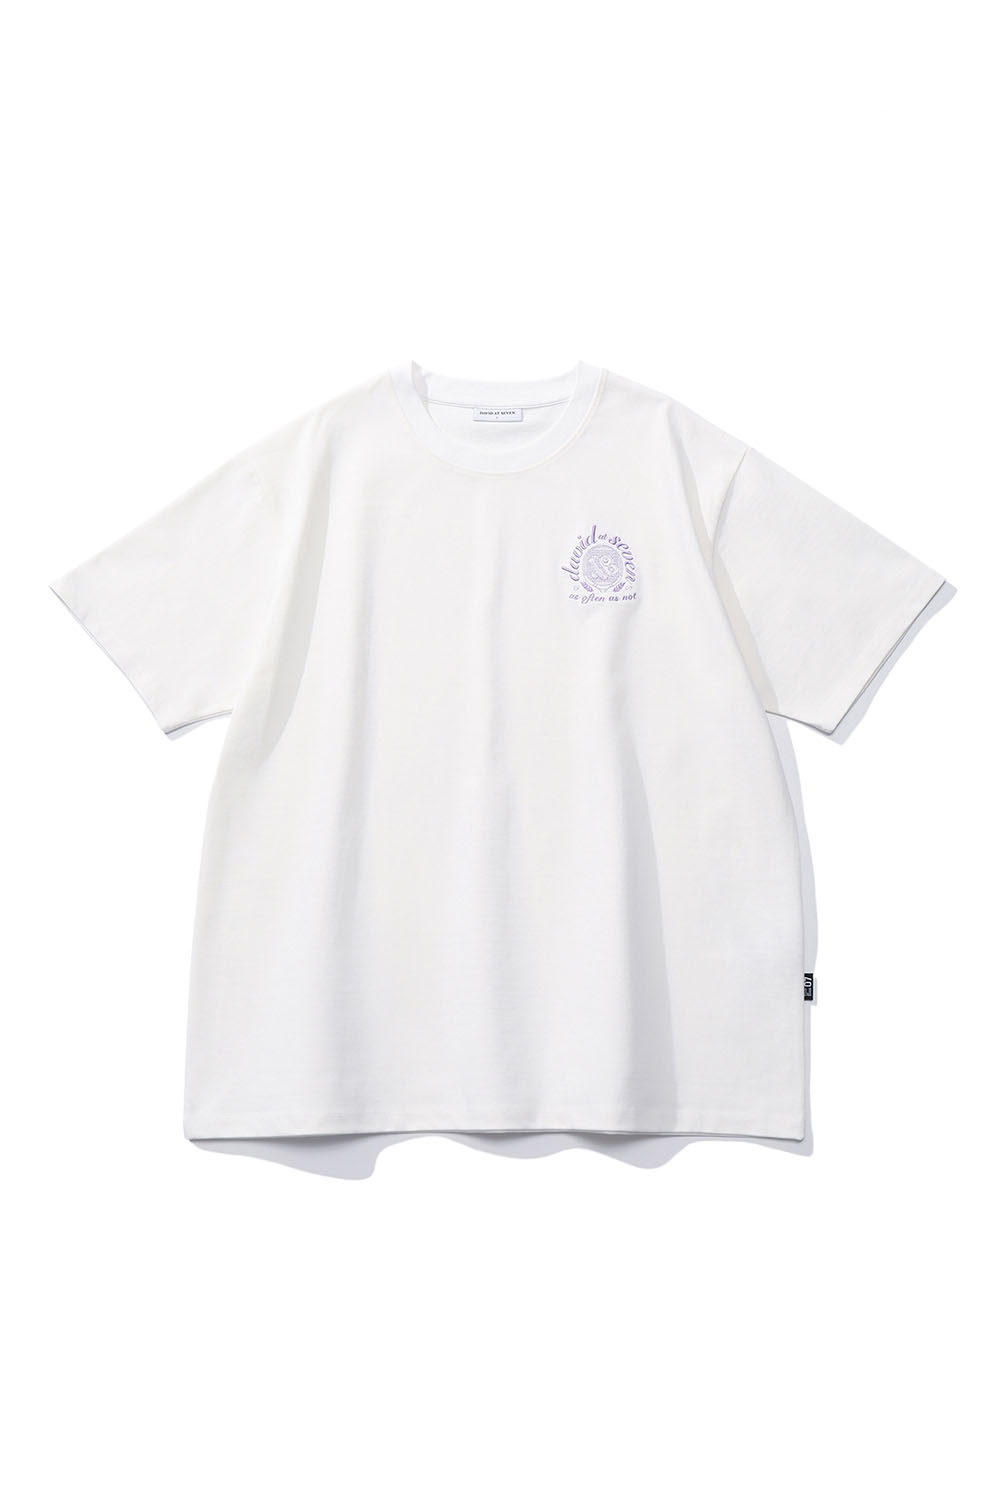 (단독가) Sunny-Side Up Racket T-shirts (white) RICHEZ